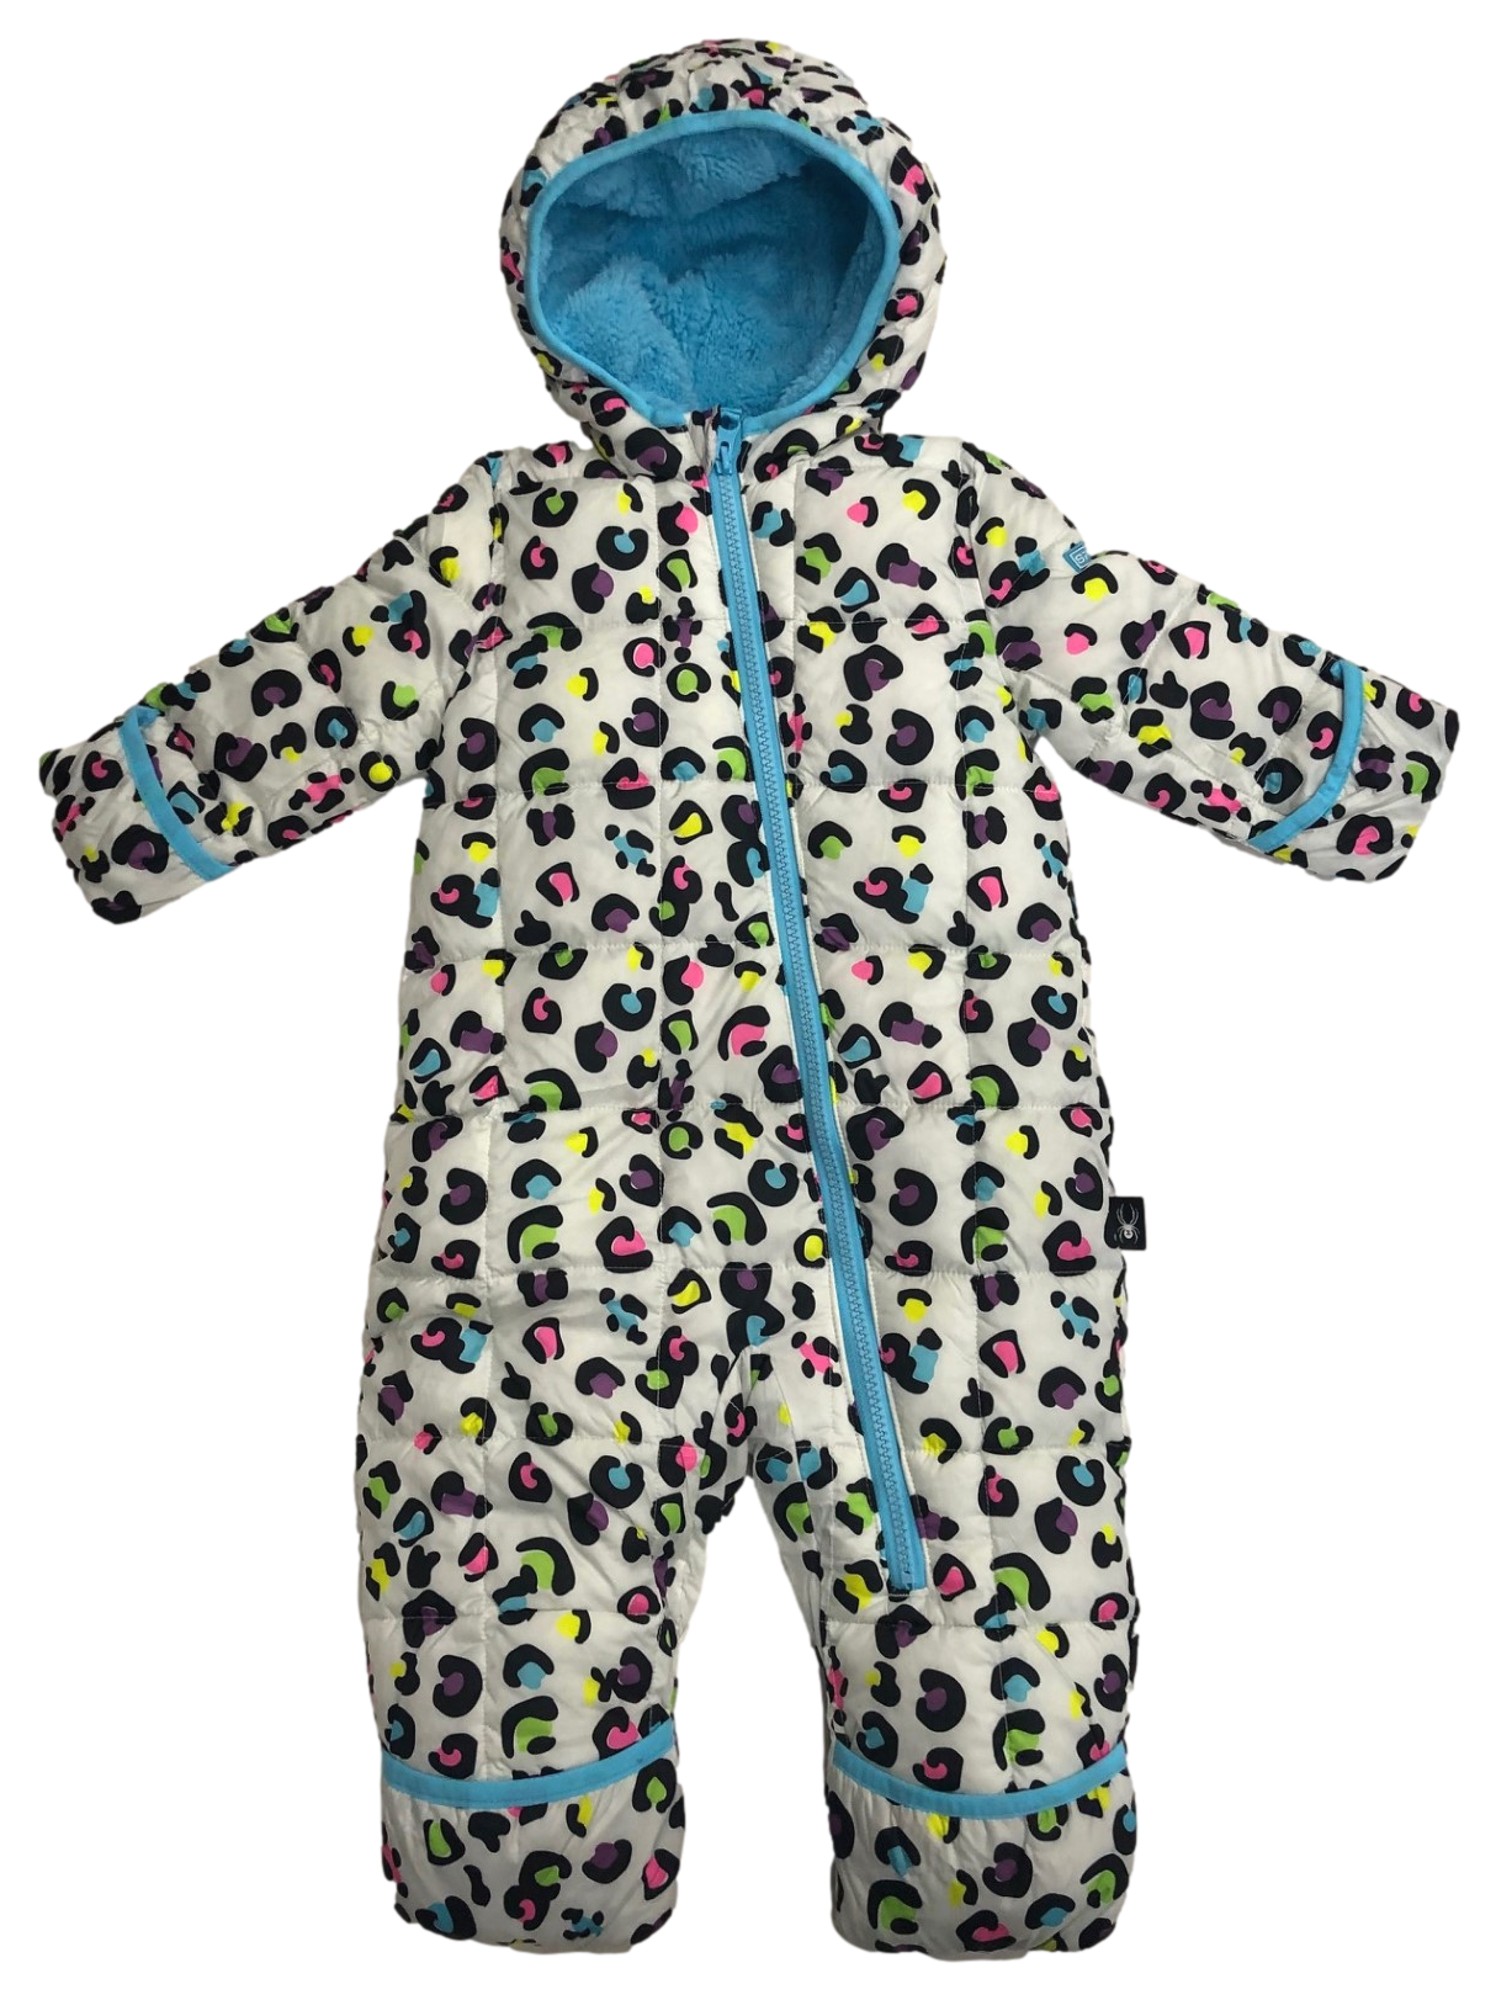 Spyder Infant Girls Colorful Leopard Print Hoodie Snowsuit Pram Snow Suit